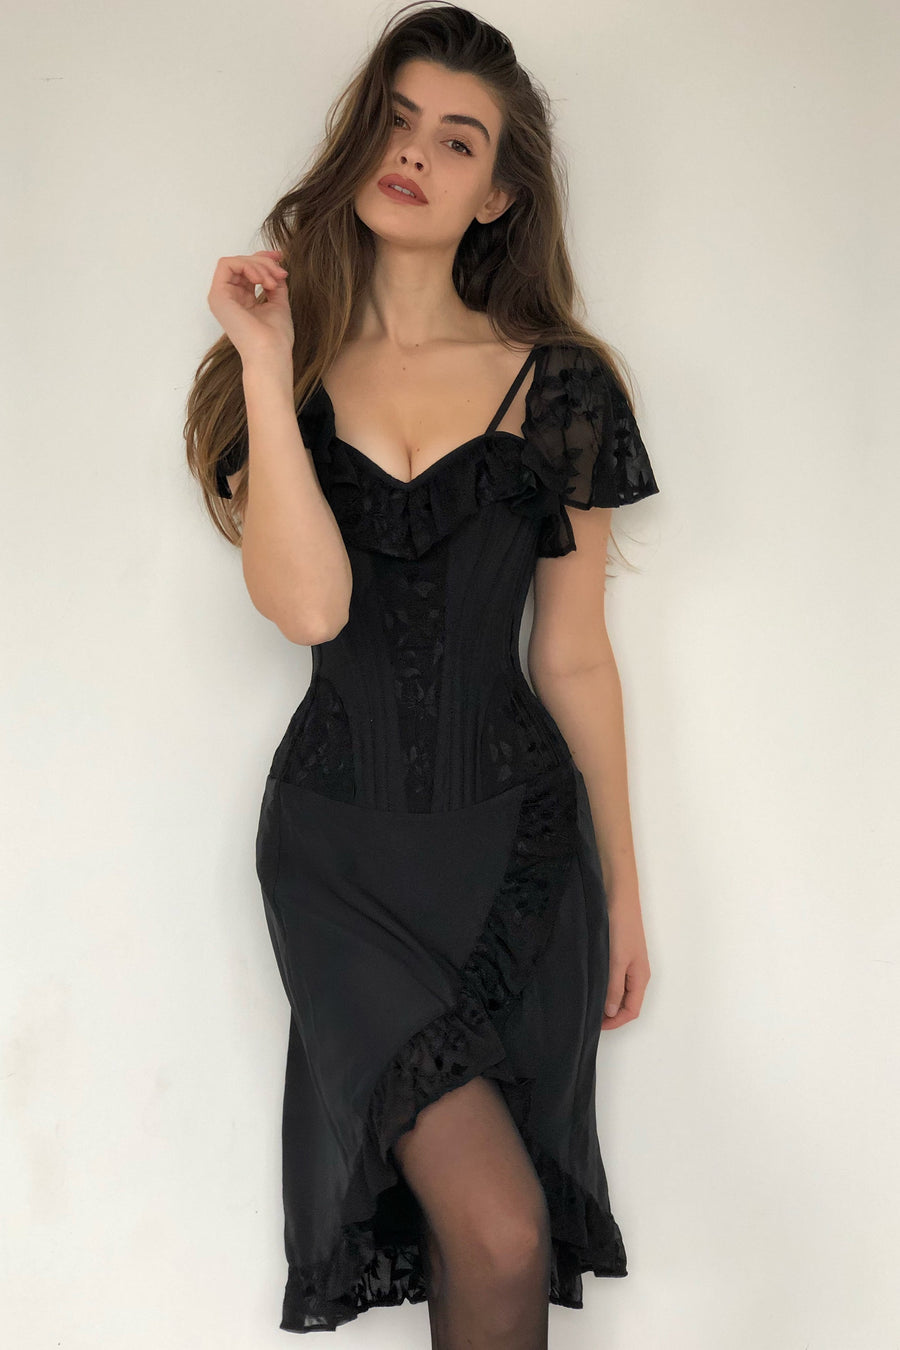 Classy Corset Dress (S-L, Black) – Pure Confidence Beautique